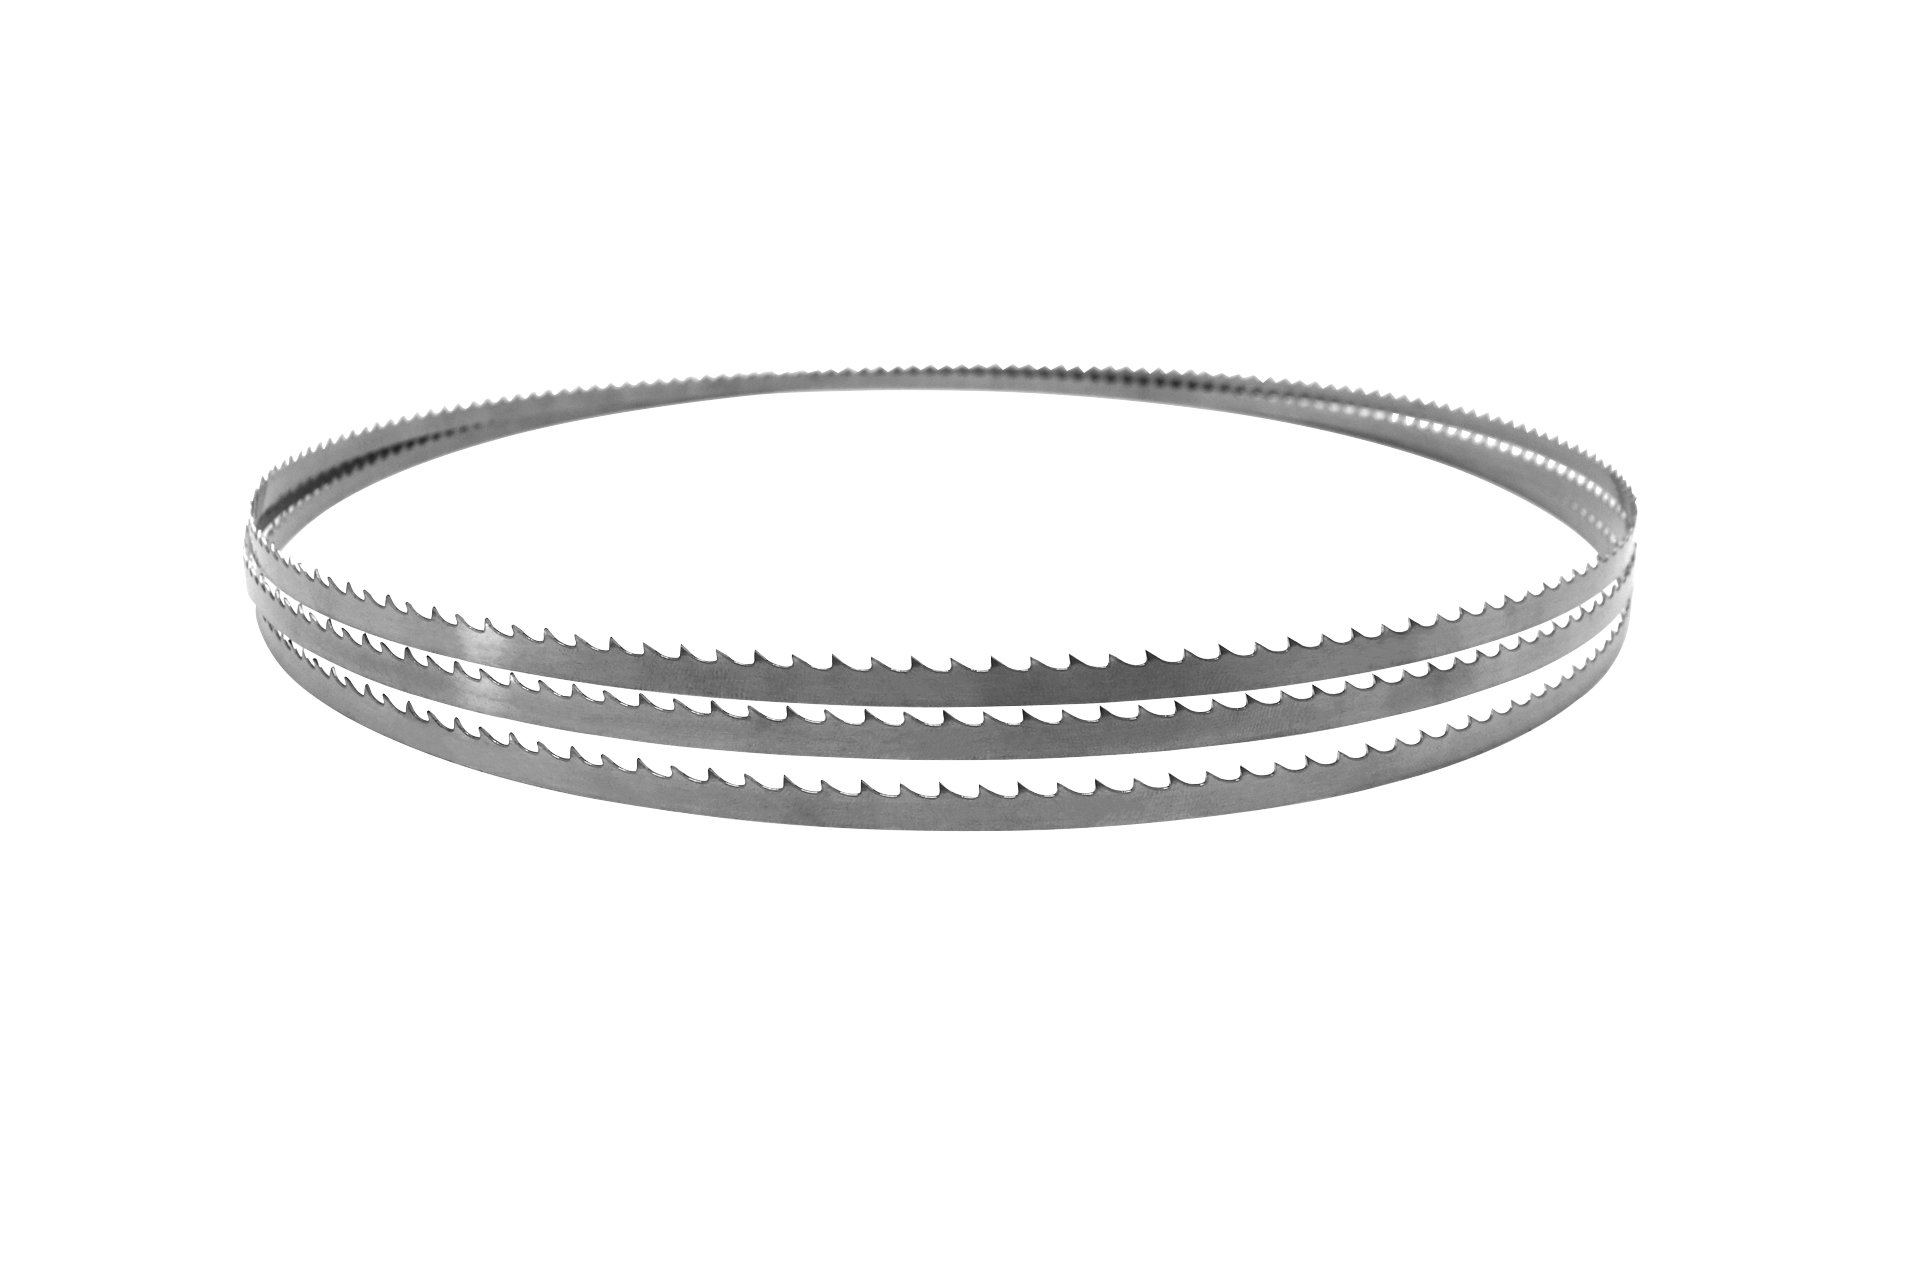 Sägeband aus Uddeholm-Stahl für MJ12, 2240 x 6 x 0,4 mm, 6 Zpz